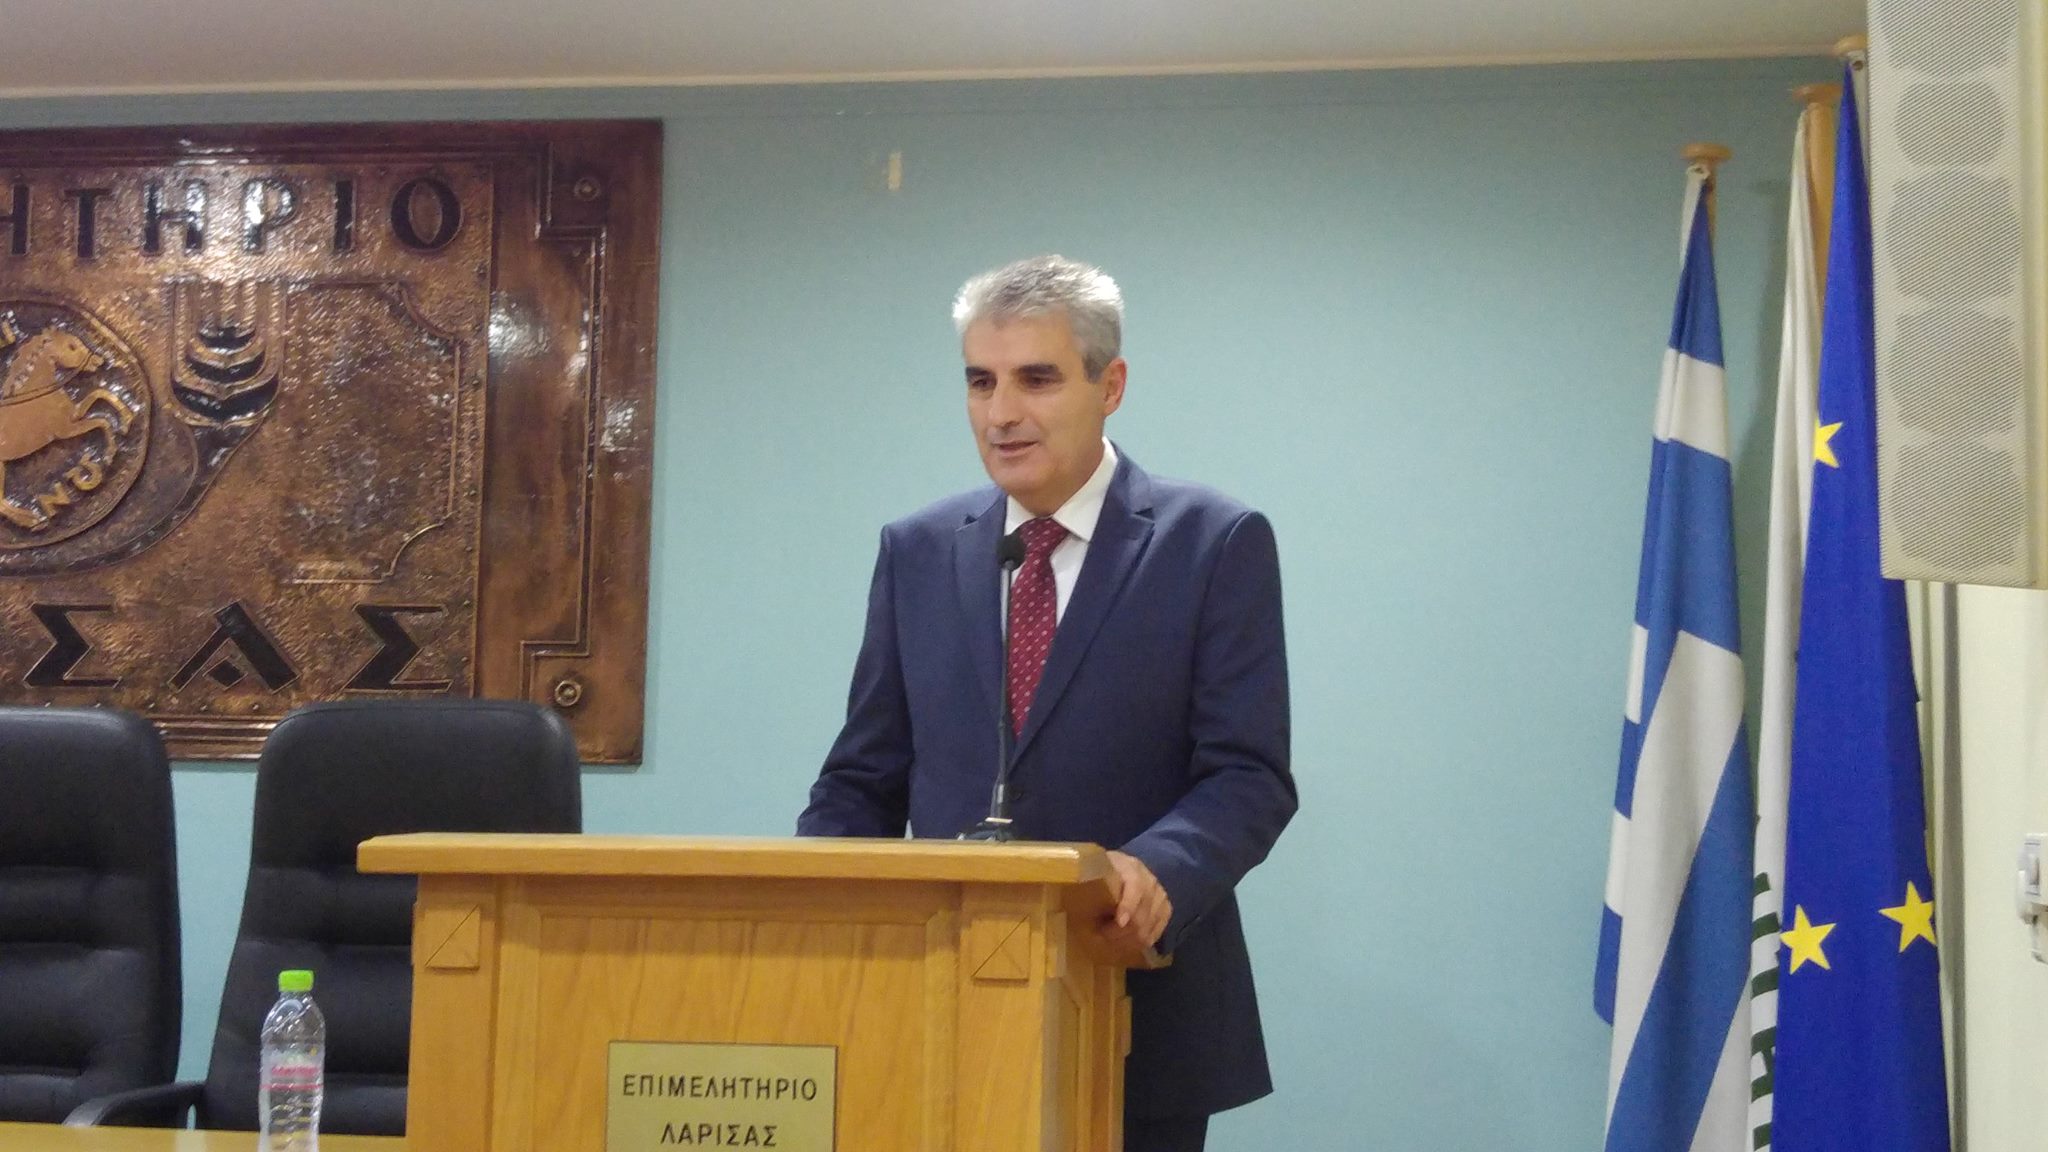 Δημήτρης Αδάμ: Μετά από 17 χρόνια ενεργής παρουσίας στη διοίκηση του Επιμελητηρίου Λάρισας κλείνει ένας κύκλος